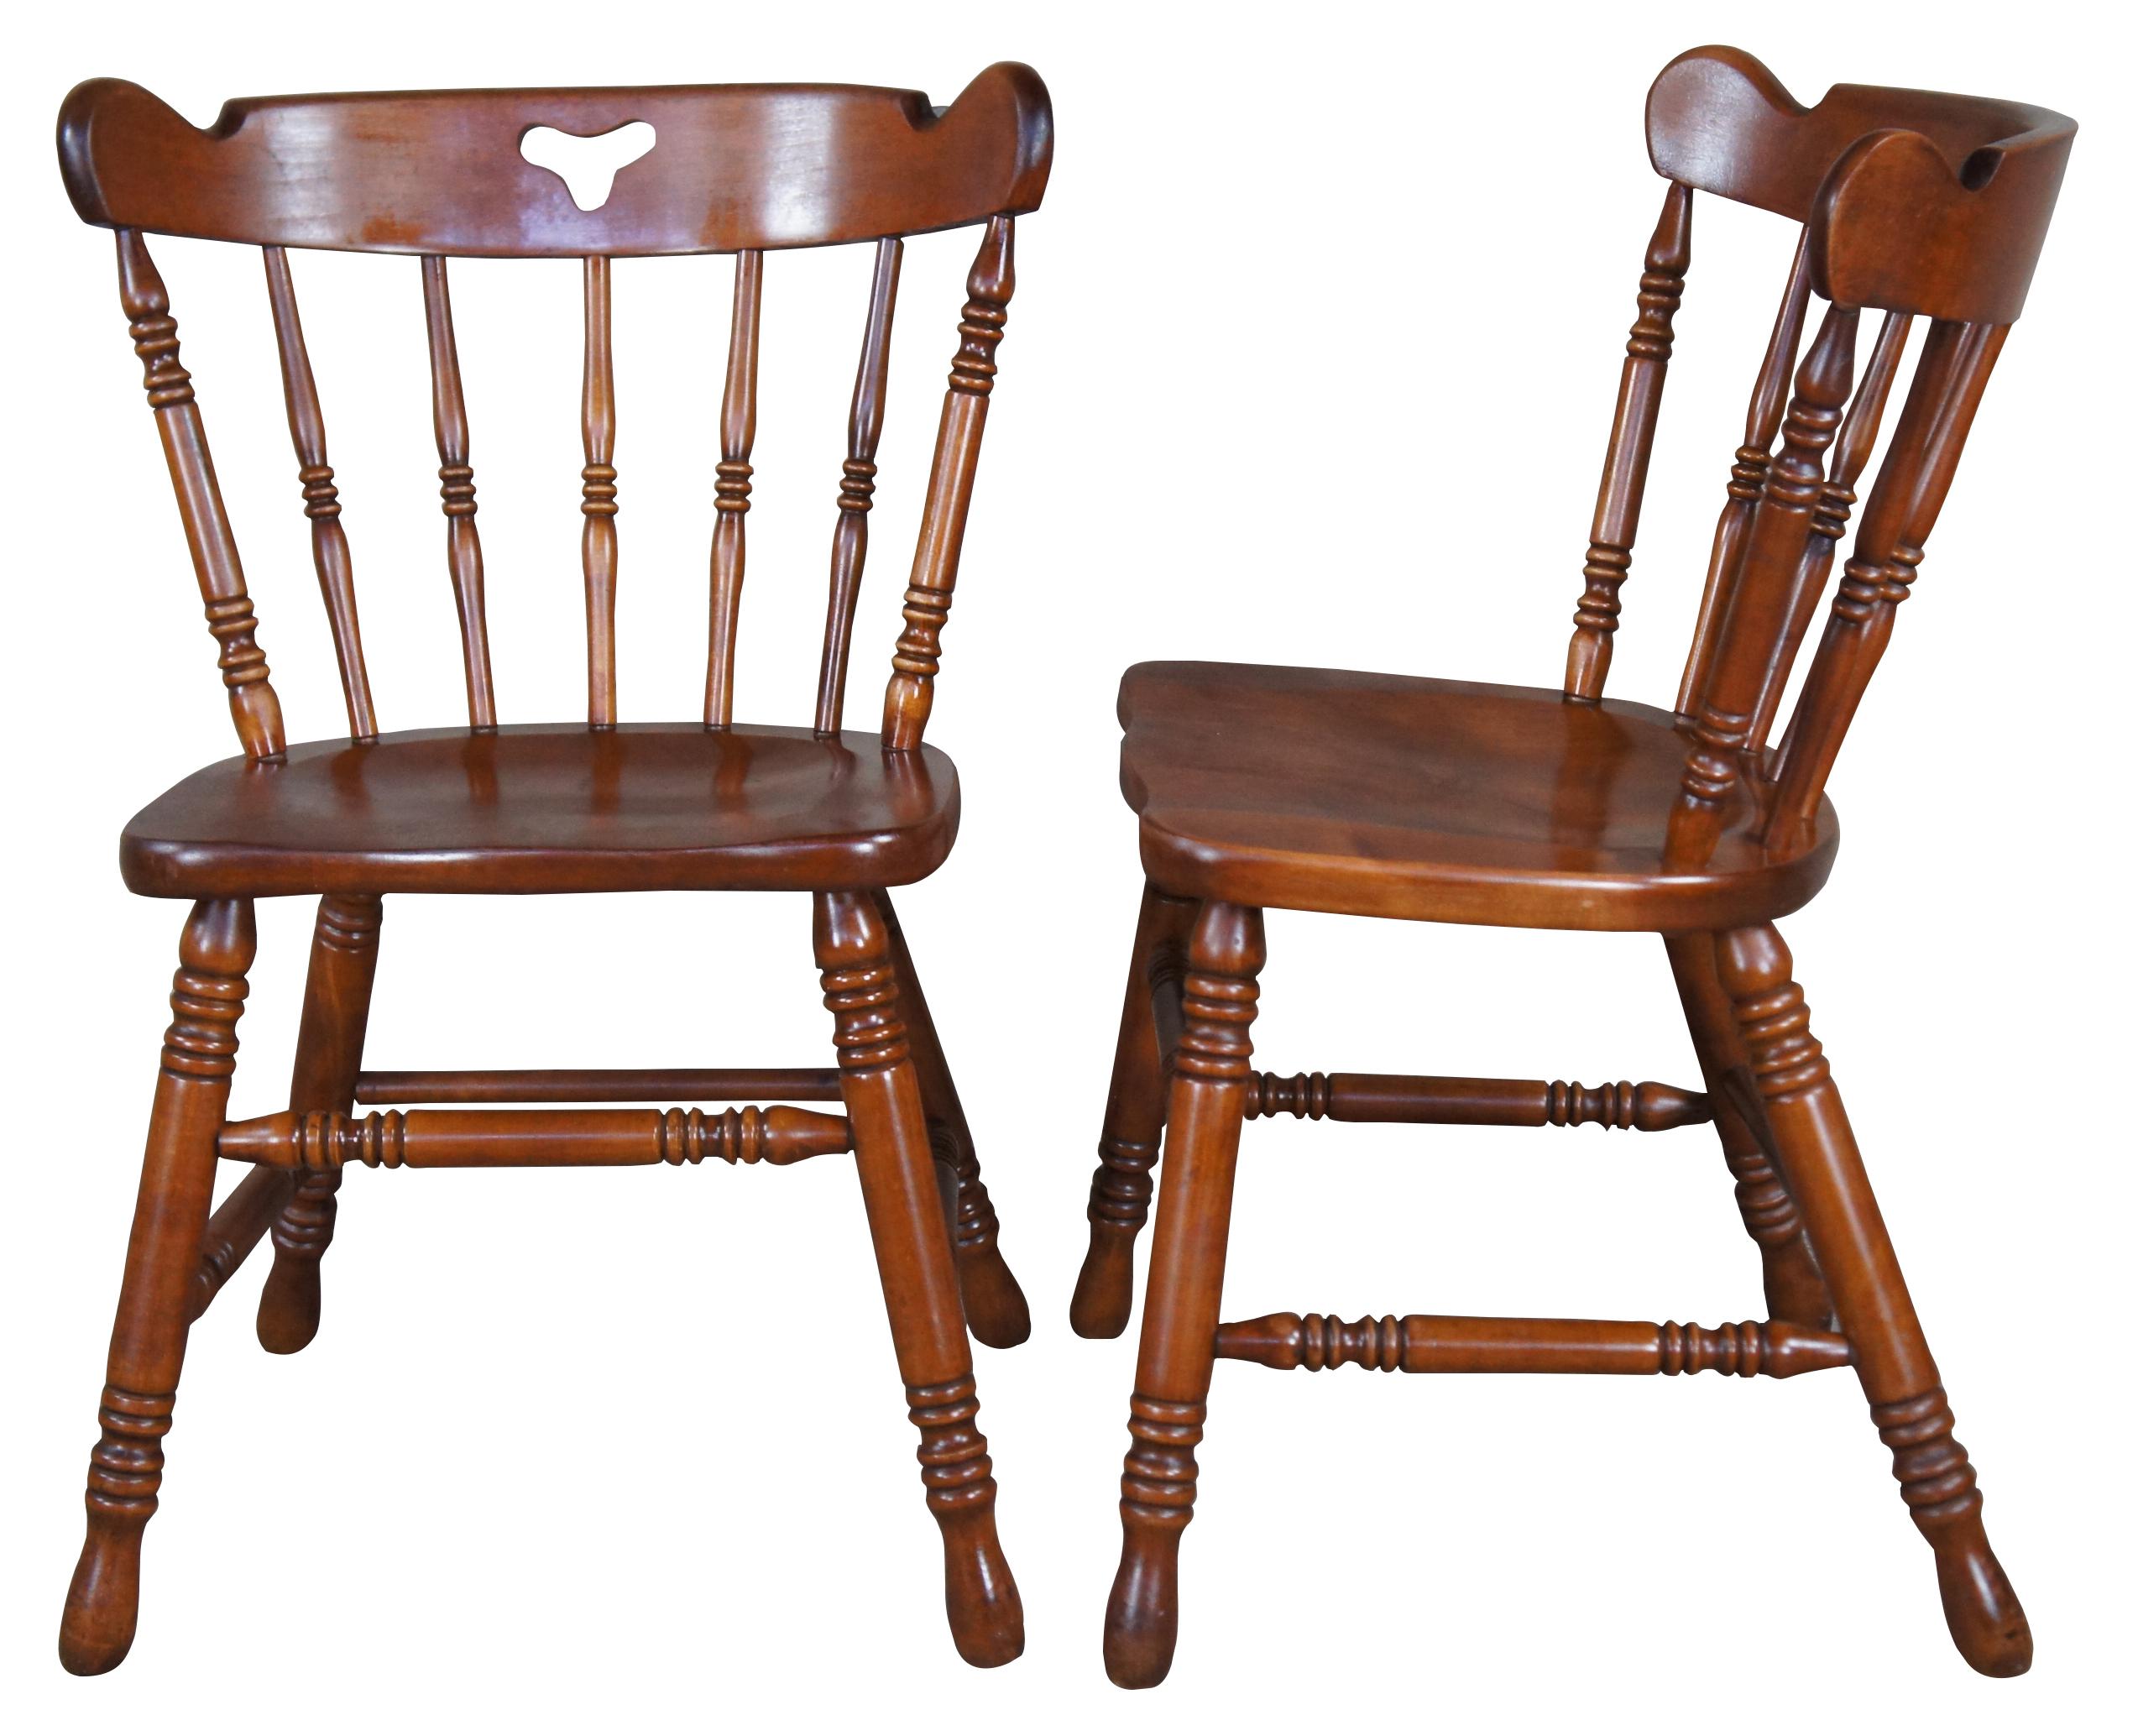 6 Esszimmerstühle aus Hard Rock Ahorn der Tell City Chair Company, ca. 1960er Jahre. Der Stuhl im Kolonialstil verfügt über eine spindelförmige Rückenlehne mit Ausschnitt und eine konturierte Sitzfläche. 

Die Tell City Furniture Company, auch